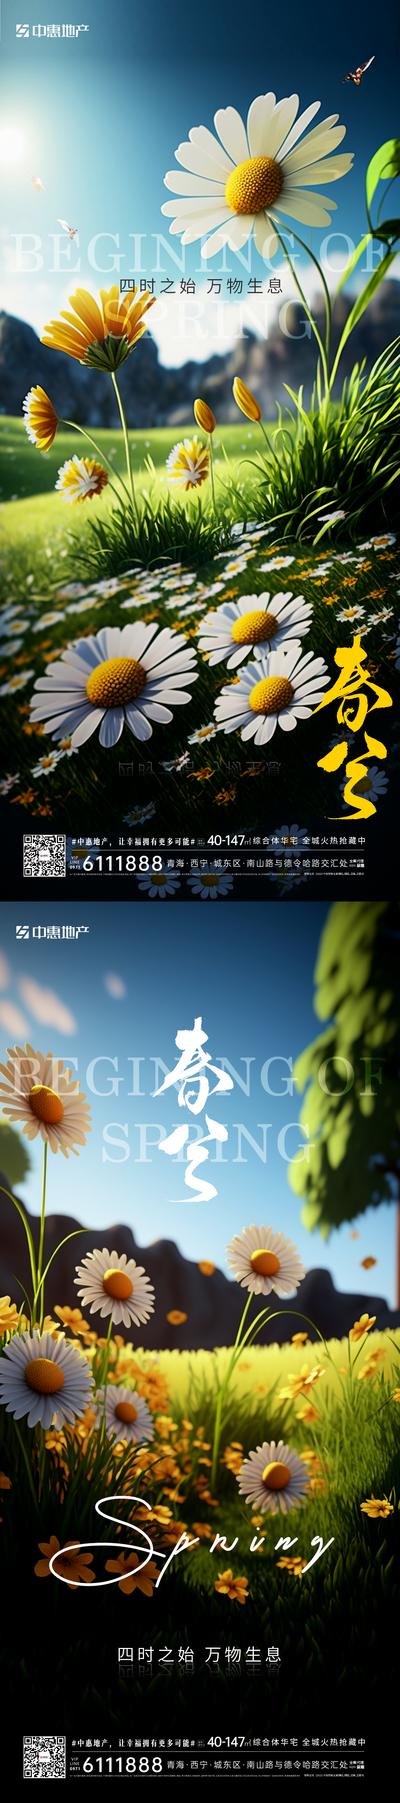 南门网 广告 海报 节气 春分 野花 鲜花 小菊花 野菊花 系列